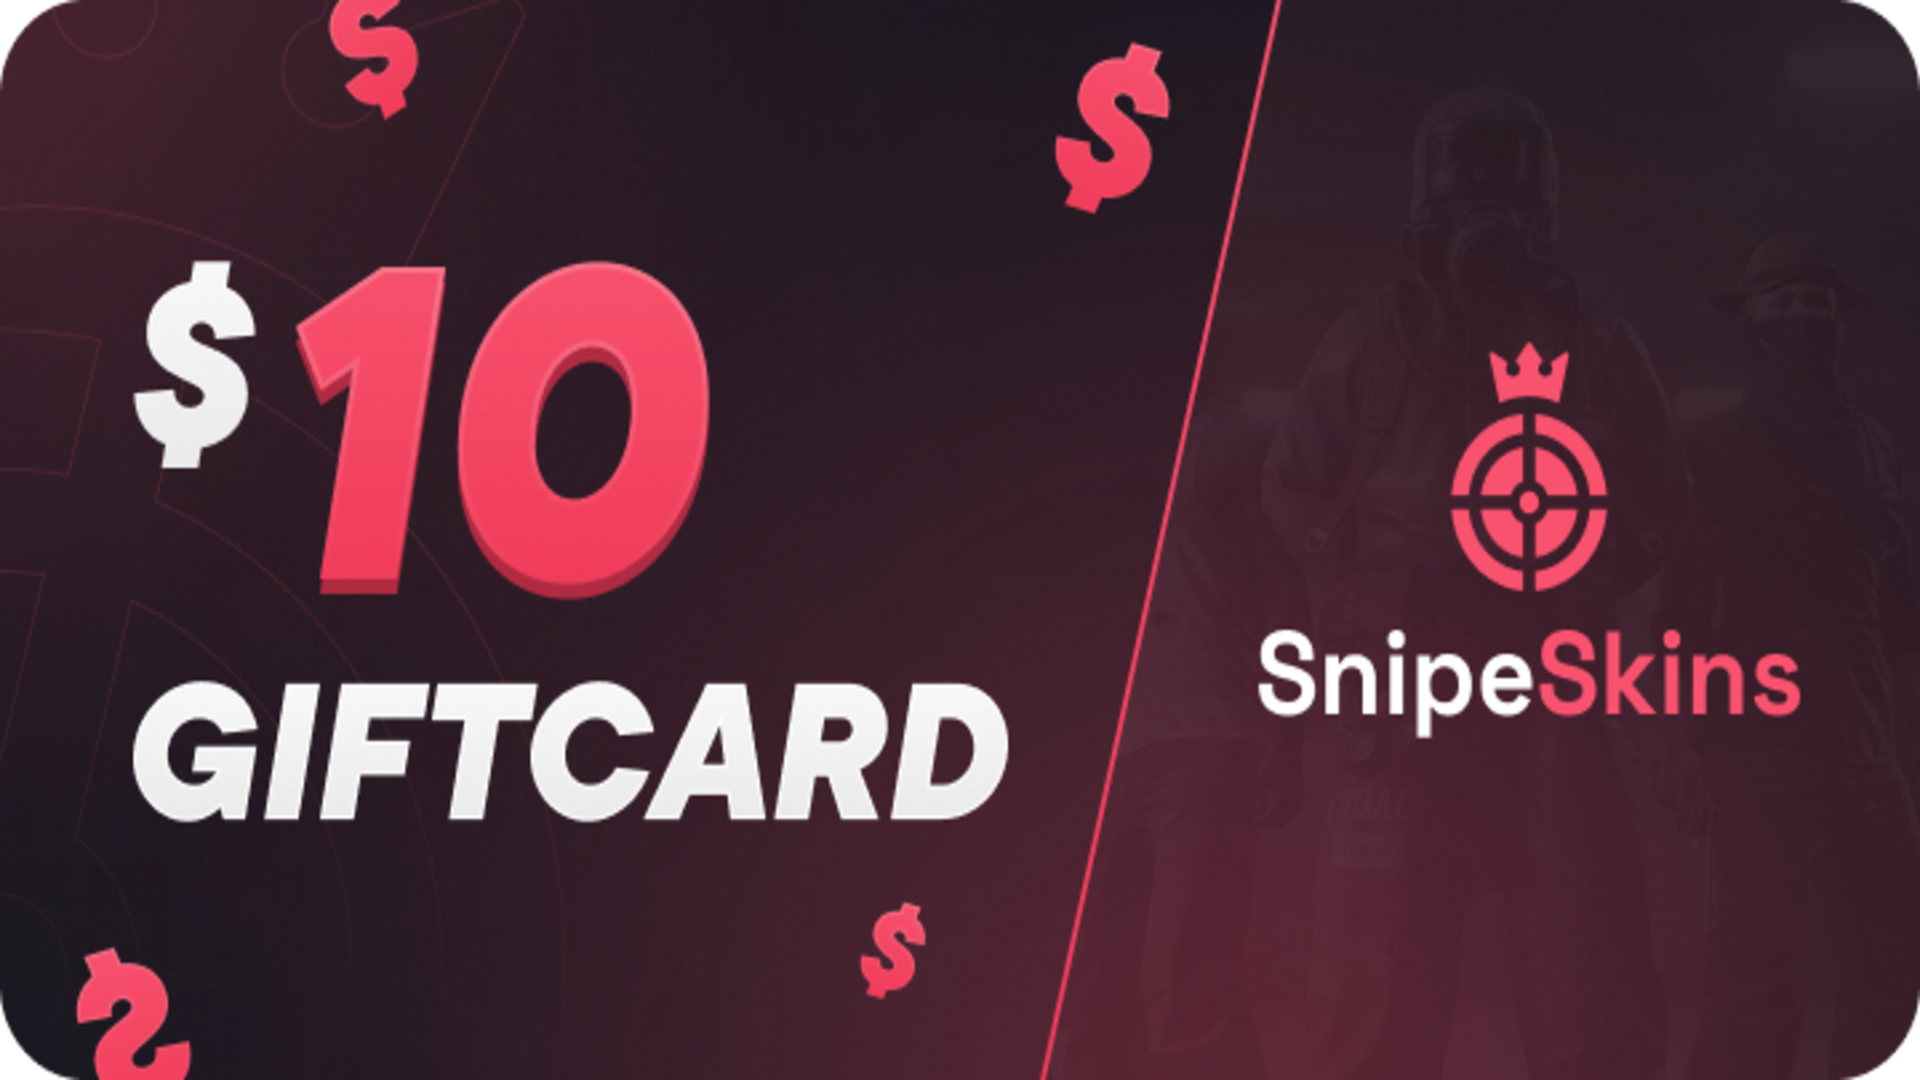 SnipeSkins $10 Gift Card $12.52